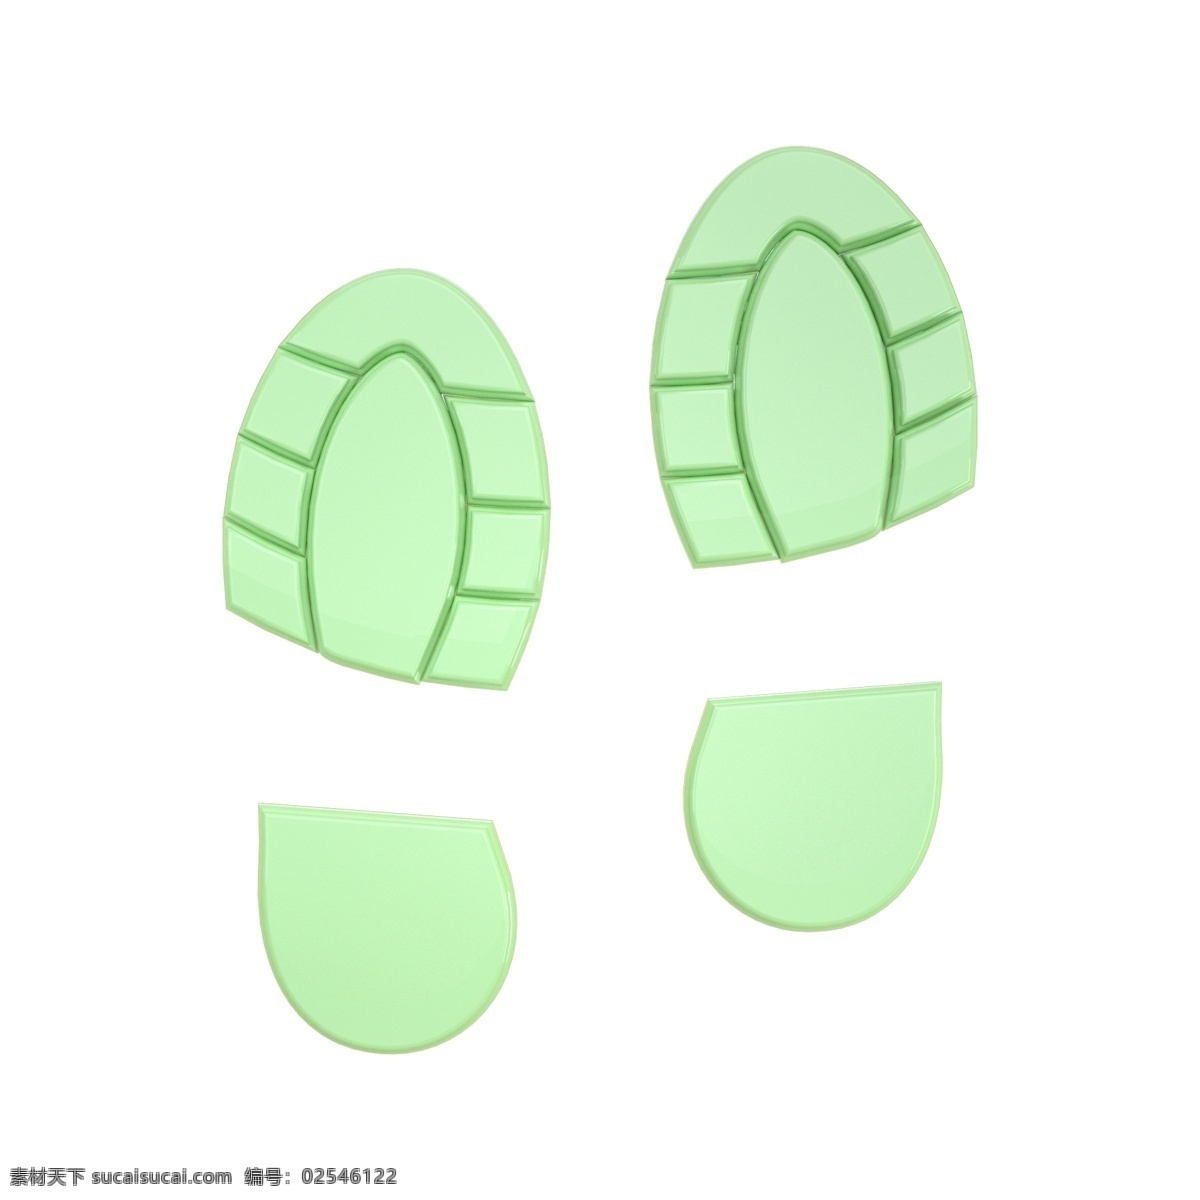 c4d 柔 绿色 立体 脚印 装饰 3d 柔色 脚印装饰 绿色脚印 质感 平面海报配图 脚丫印